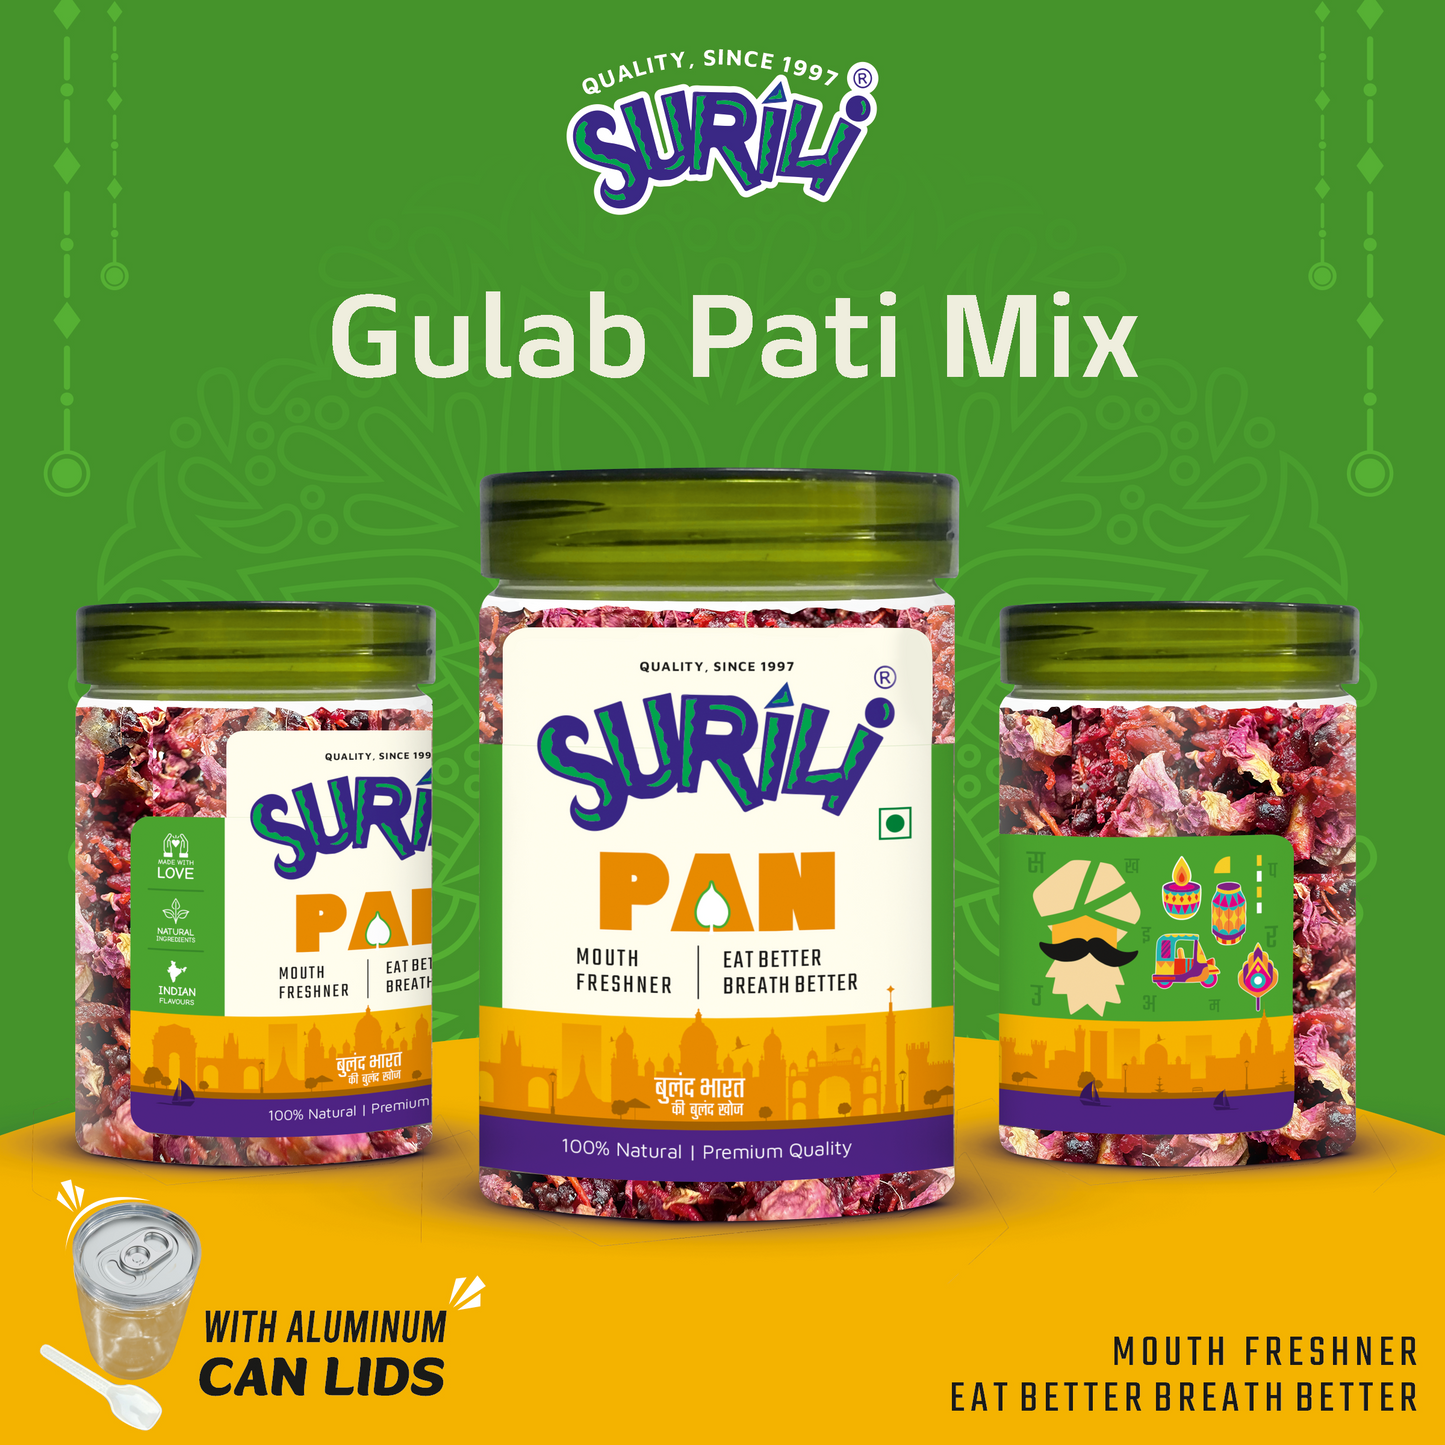 Gulab Patti Mix